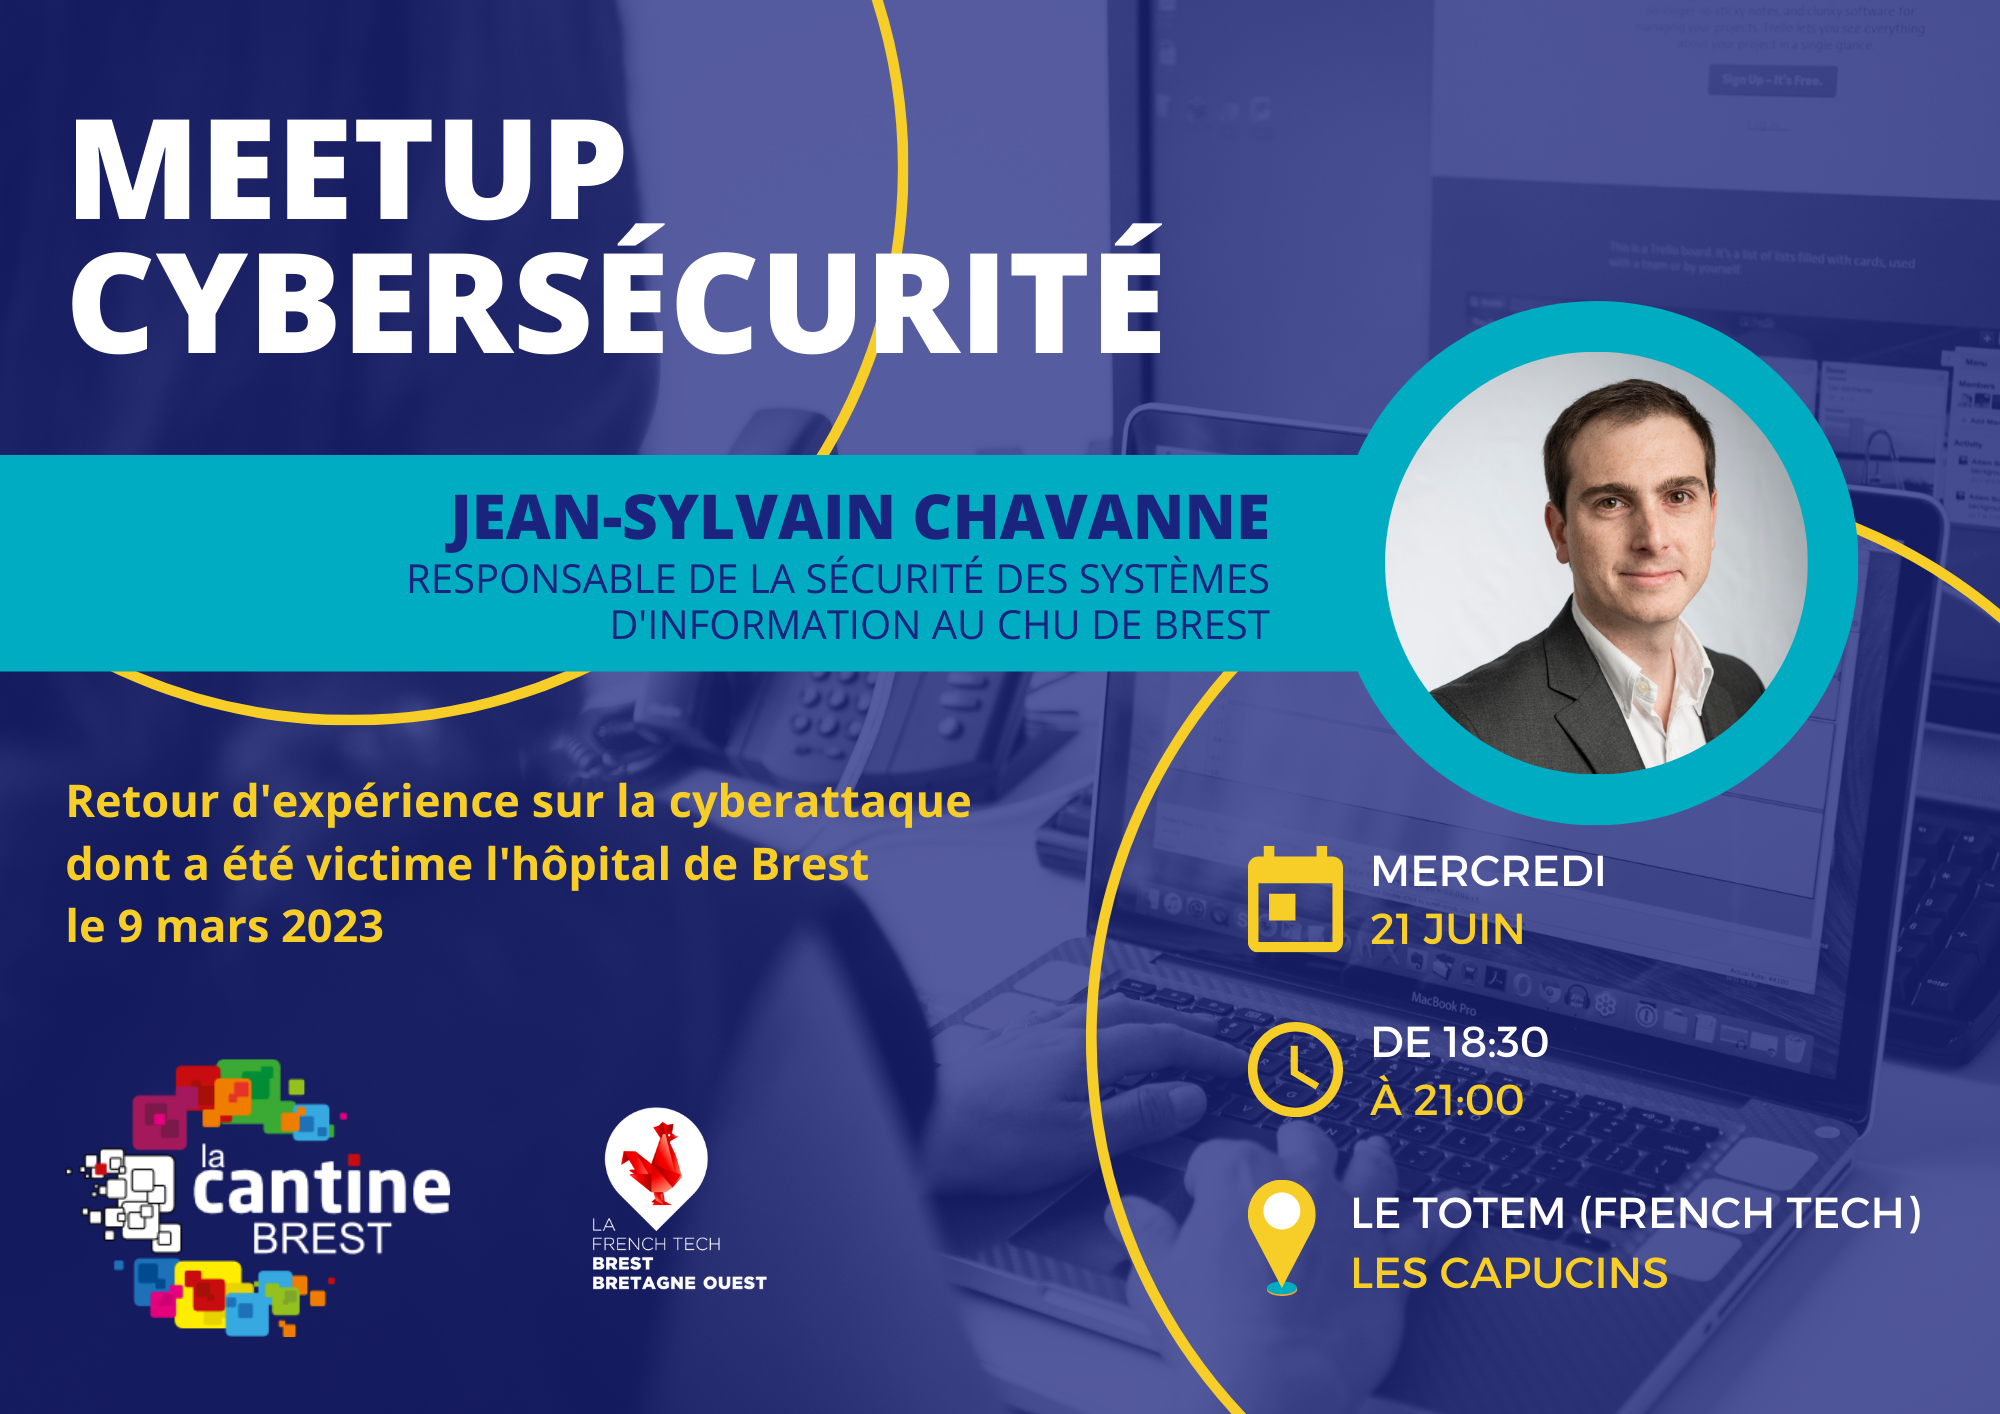 Visuel du meetup cybersécurité organisé par la Cantine numérique de Brest au Totem La French Tech le 21 juin 2023.